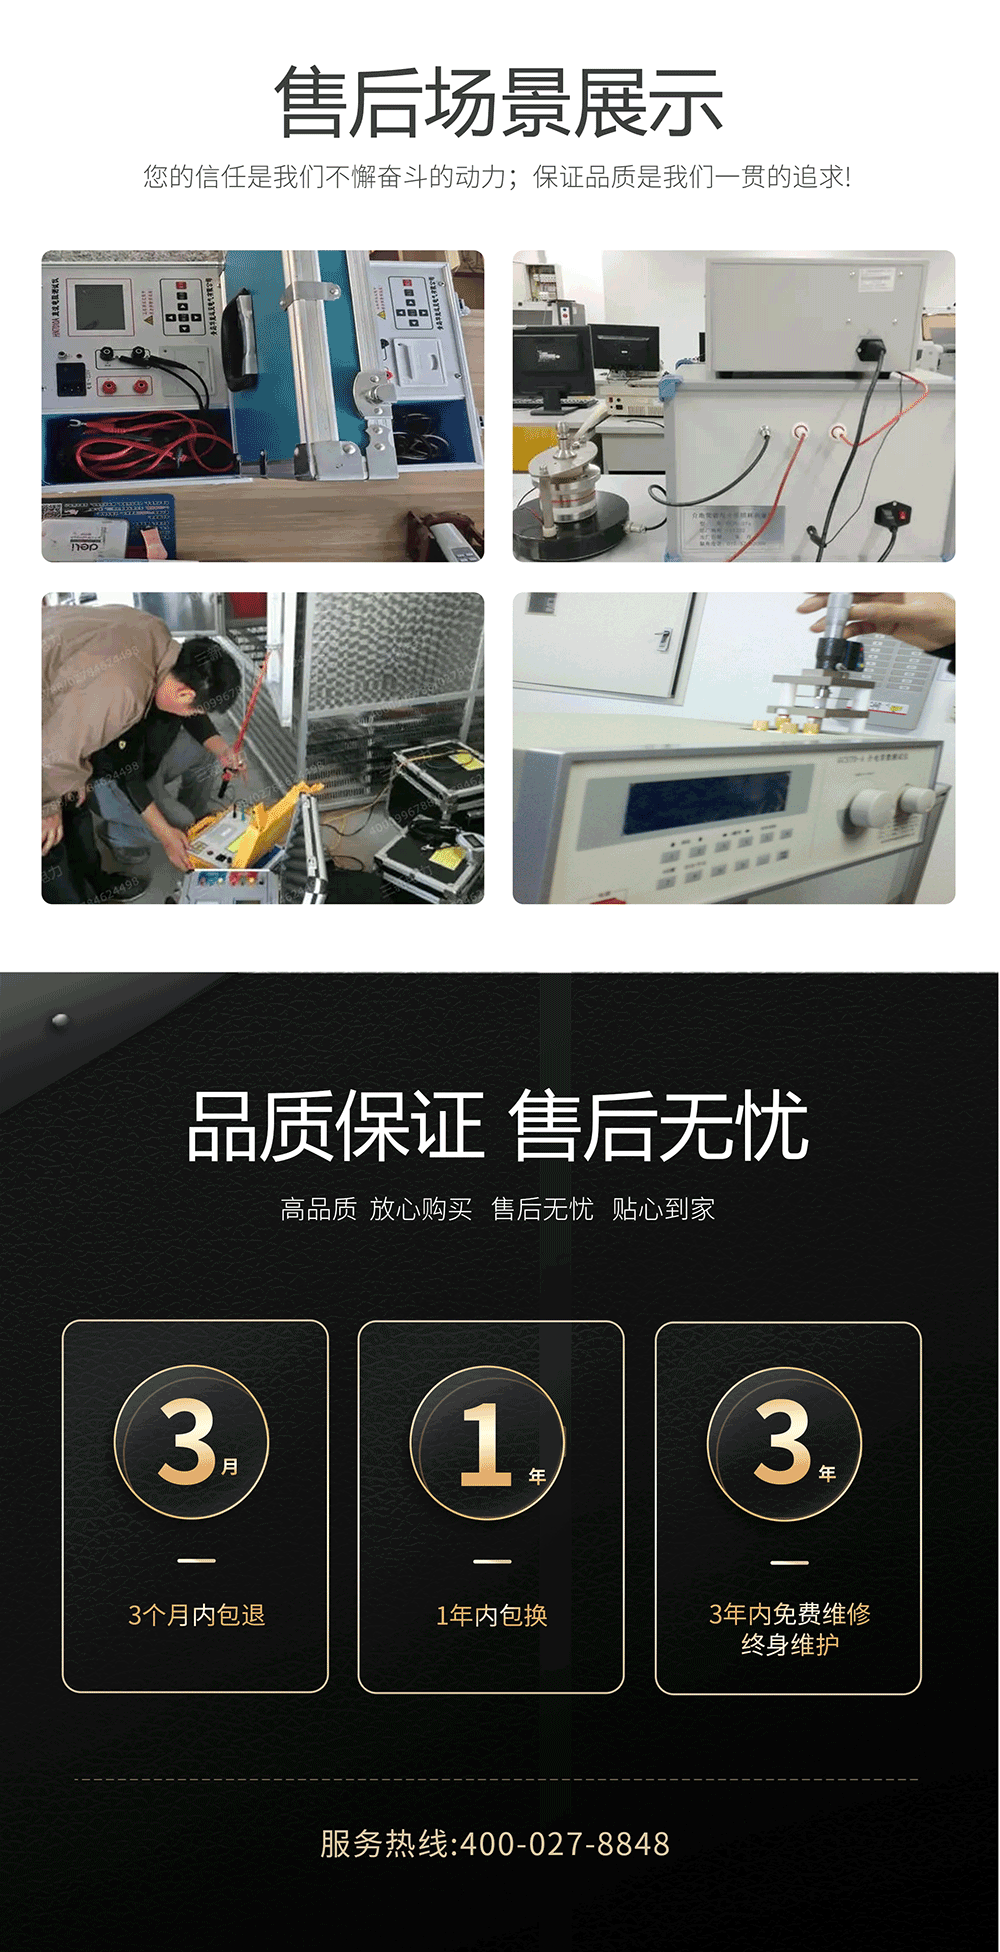 介电常数测试仪